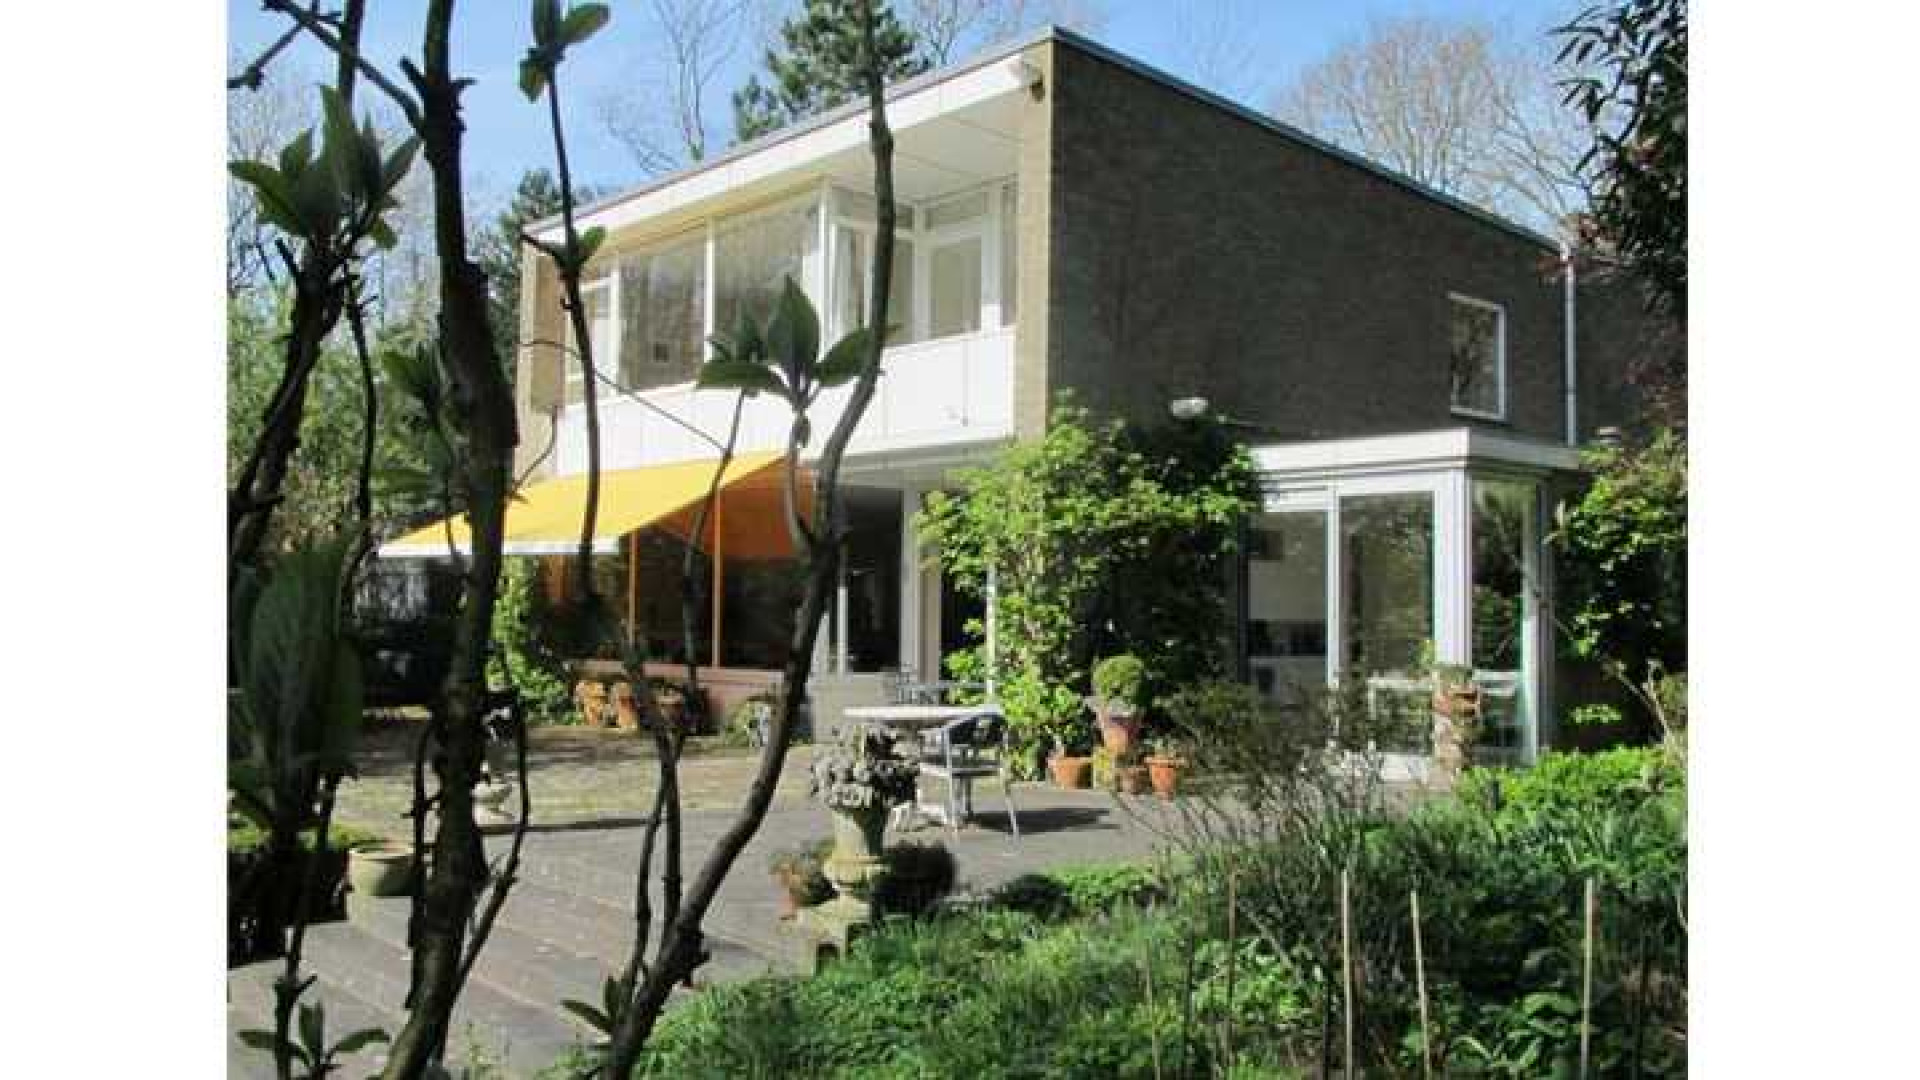 Totale prijsverlaging van half miljoen euro moet koper lokken voor villa Neelie Smit Kroes. Zie foto's! 3